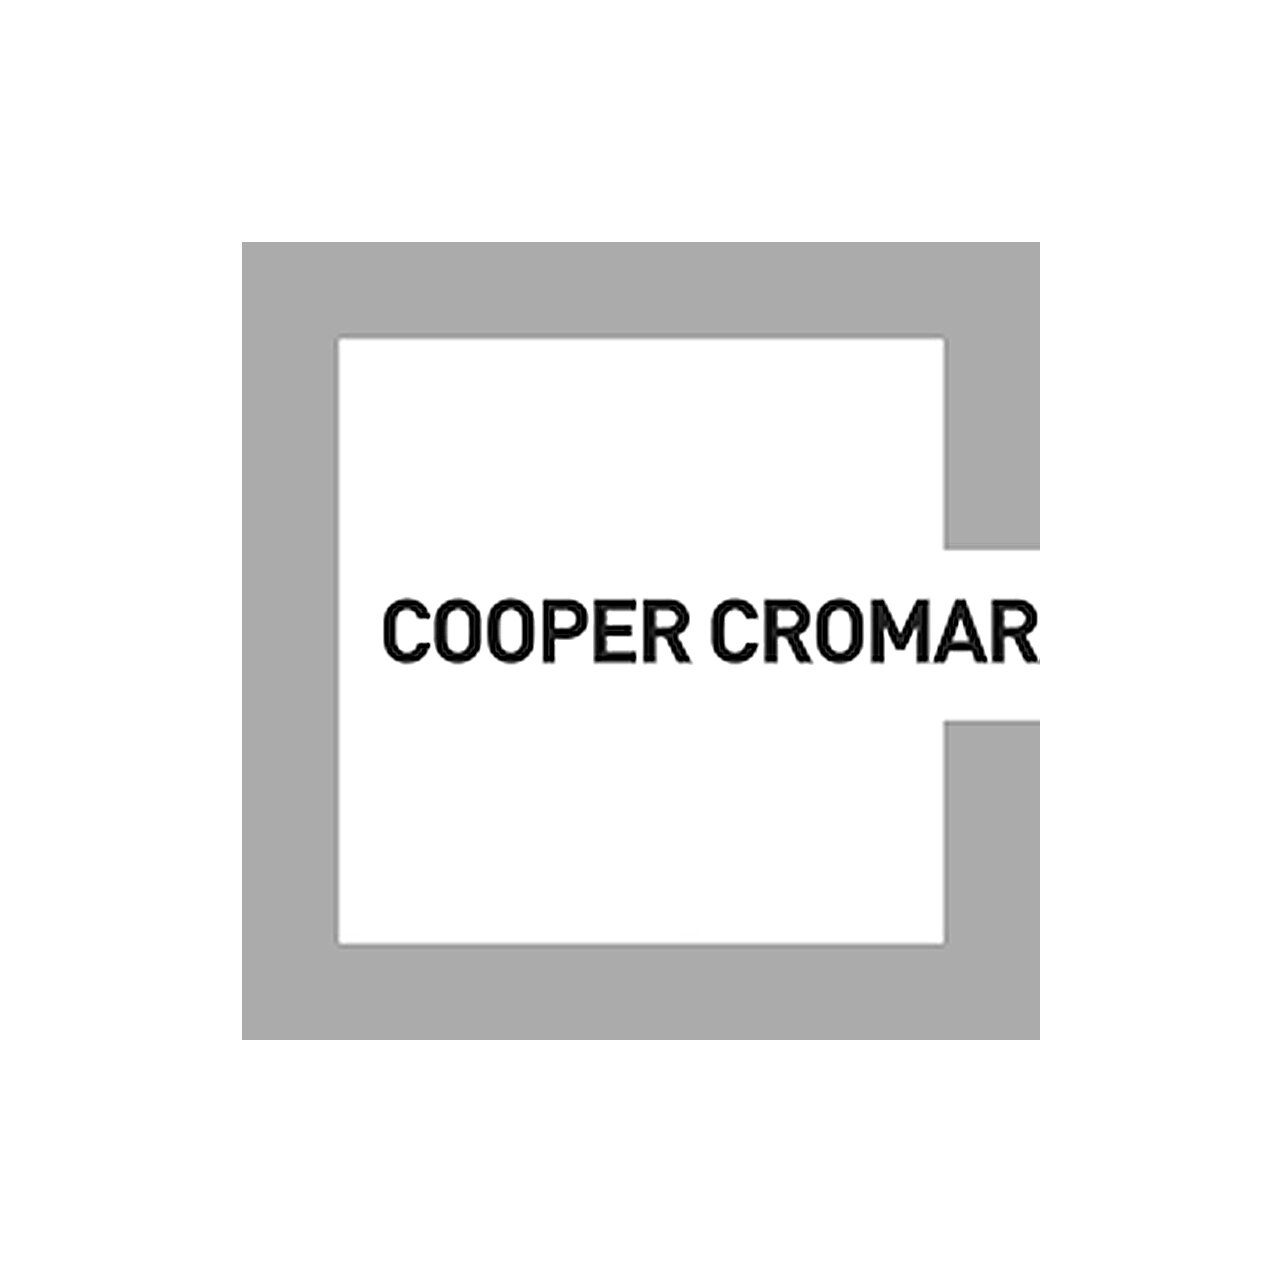 CooperCromar.jpg